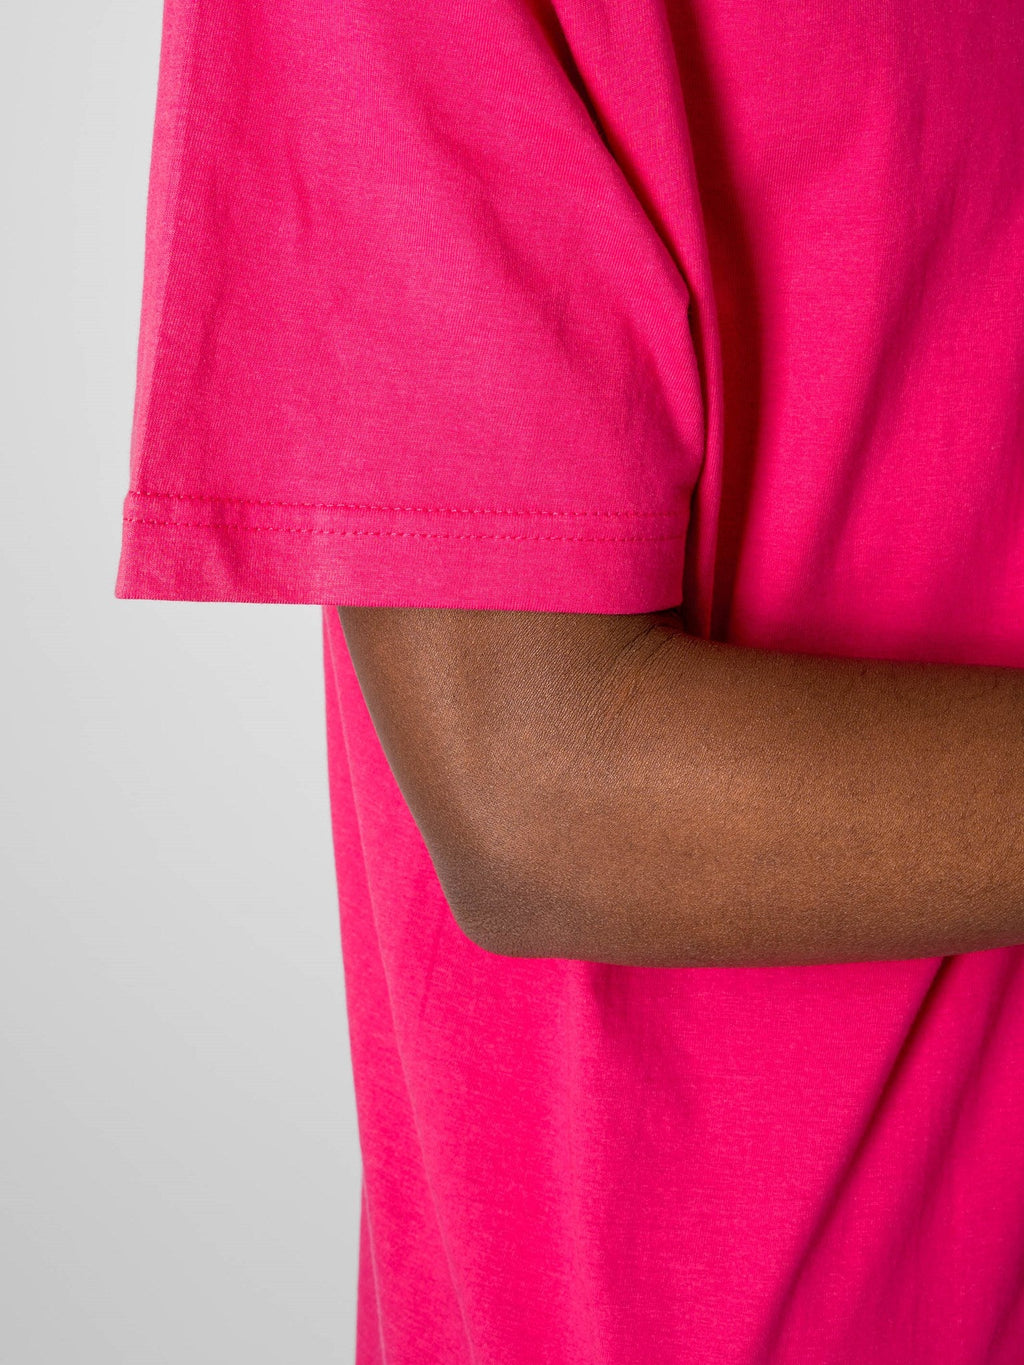 T-shirt surdimensionné - rose